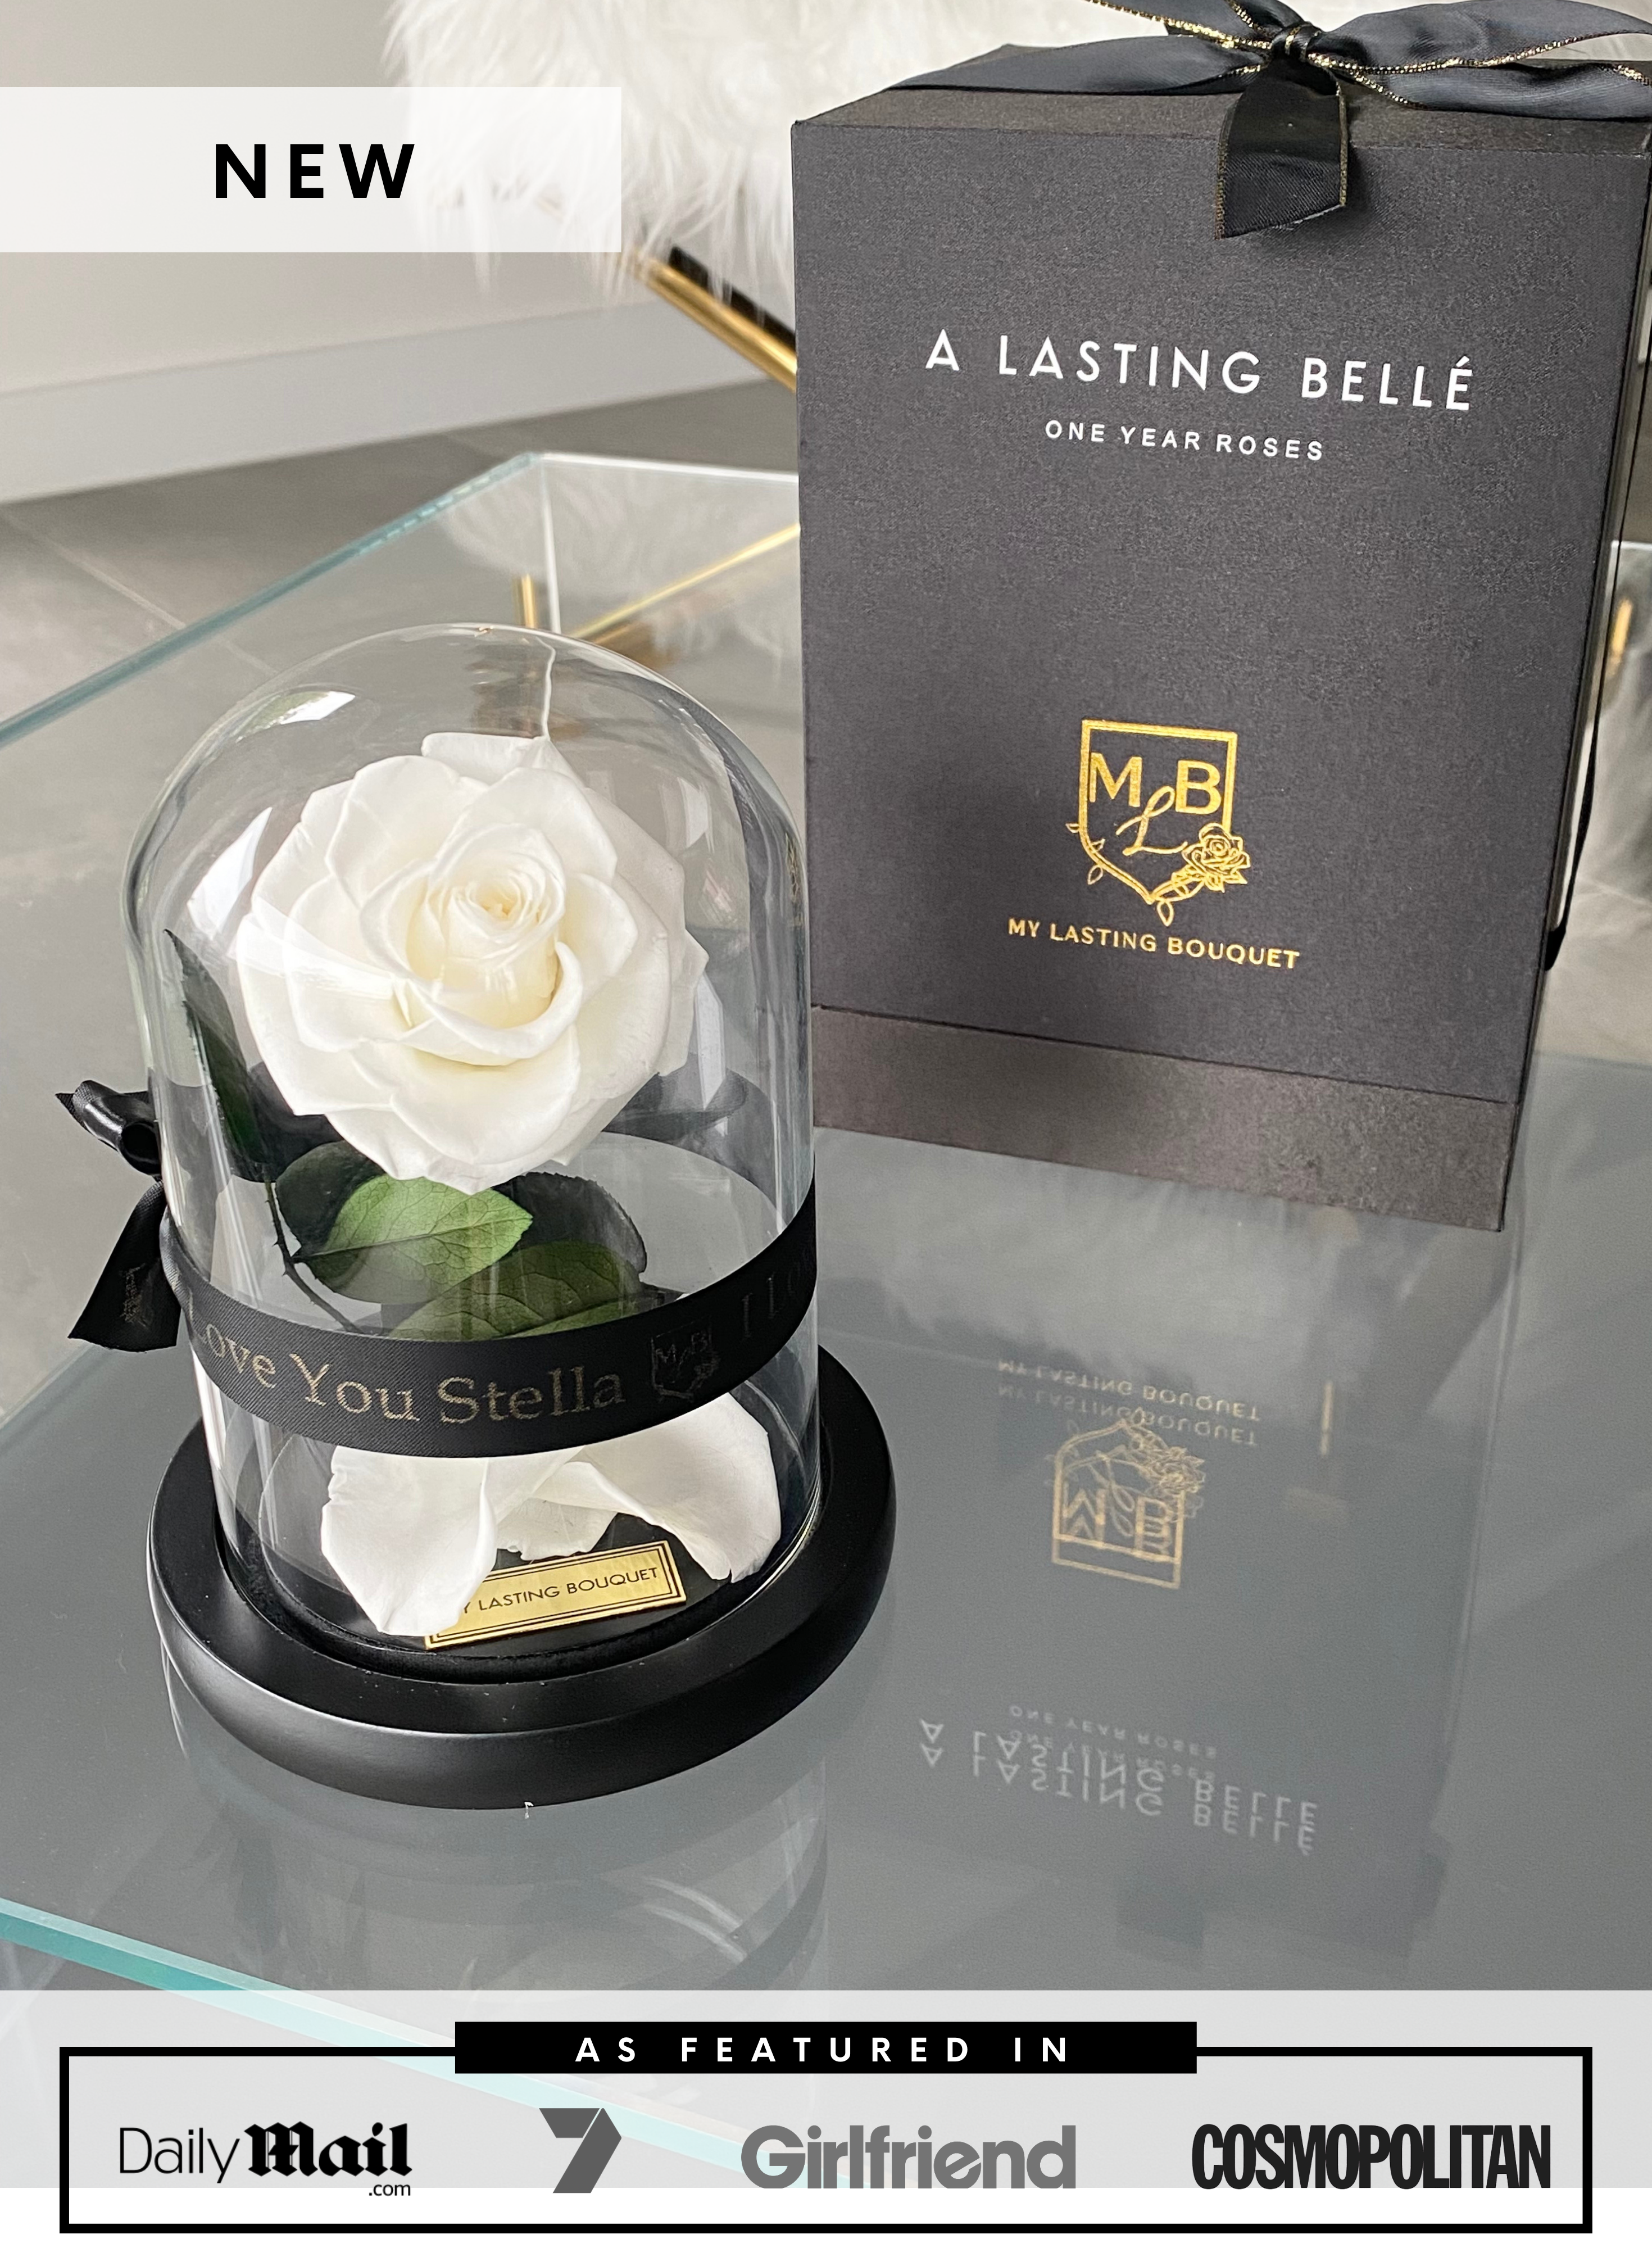 WHITE Mini Rose Dome - My Lasting Bouquet